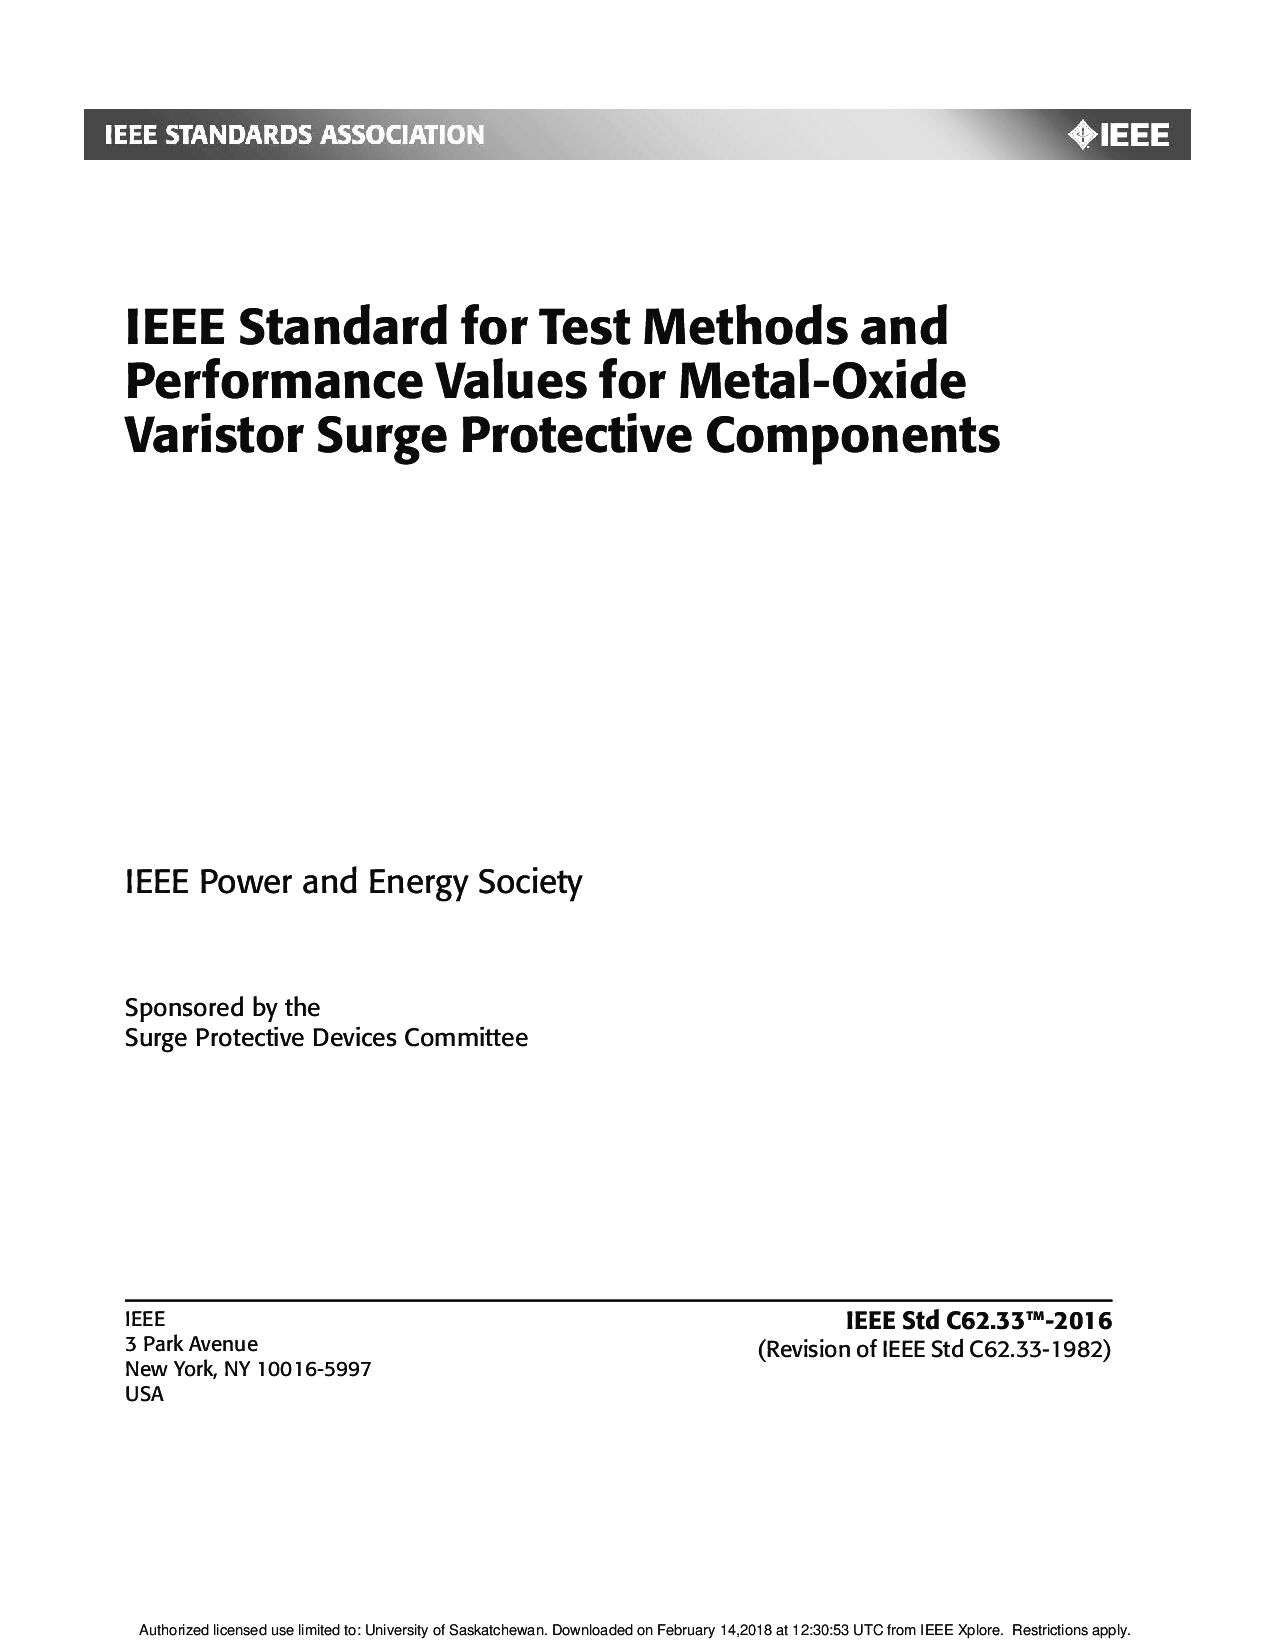 IEEE Std C62.33-2016